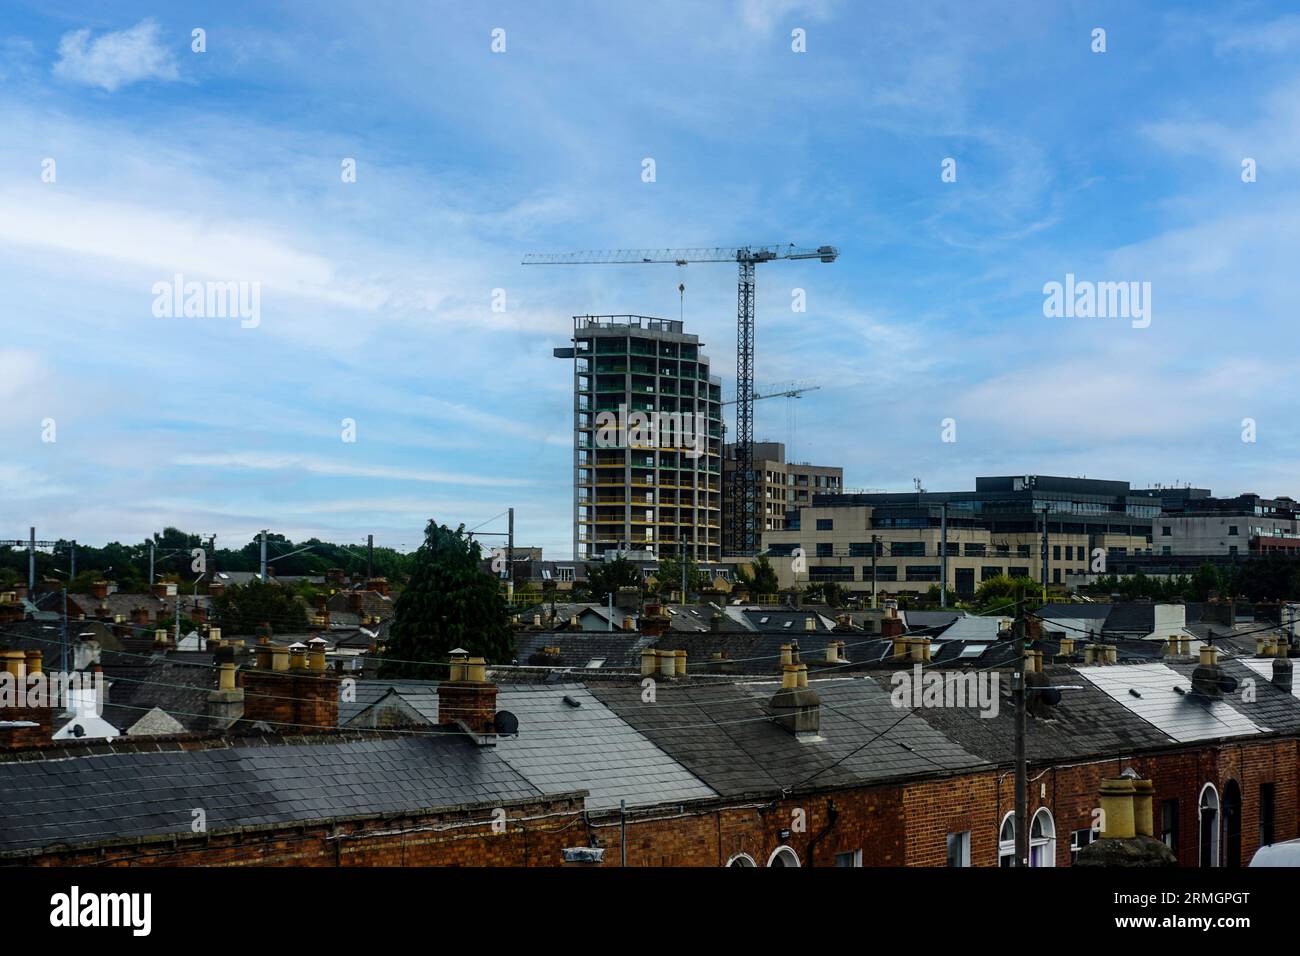 Construction d'un hôtel de 15 étages, bureaux et construire à louer des appartements à East Wall Road, East Wall. Dublin Irlande. MKN Property sont les développeurs Banque D'Images